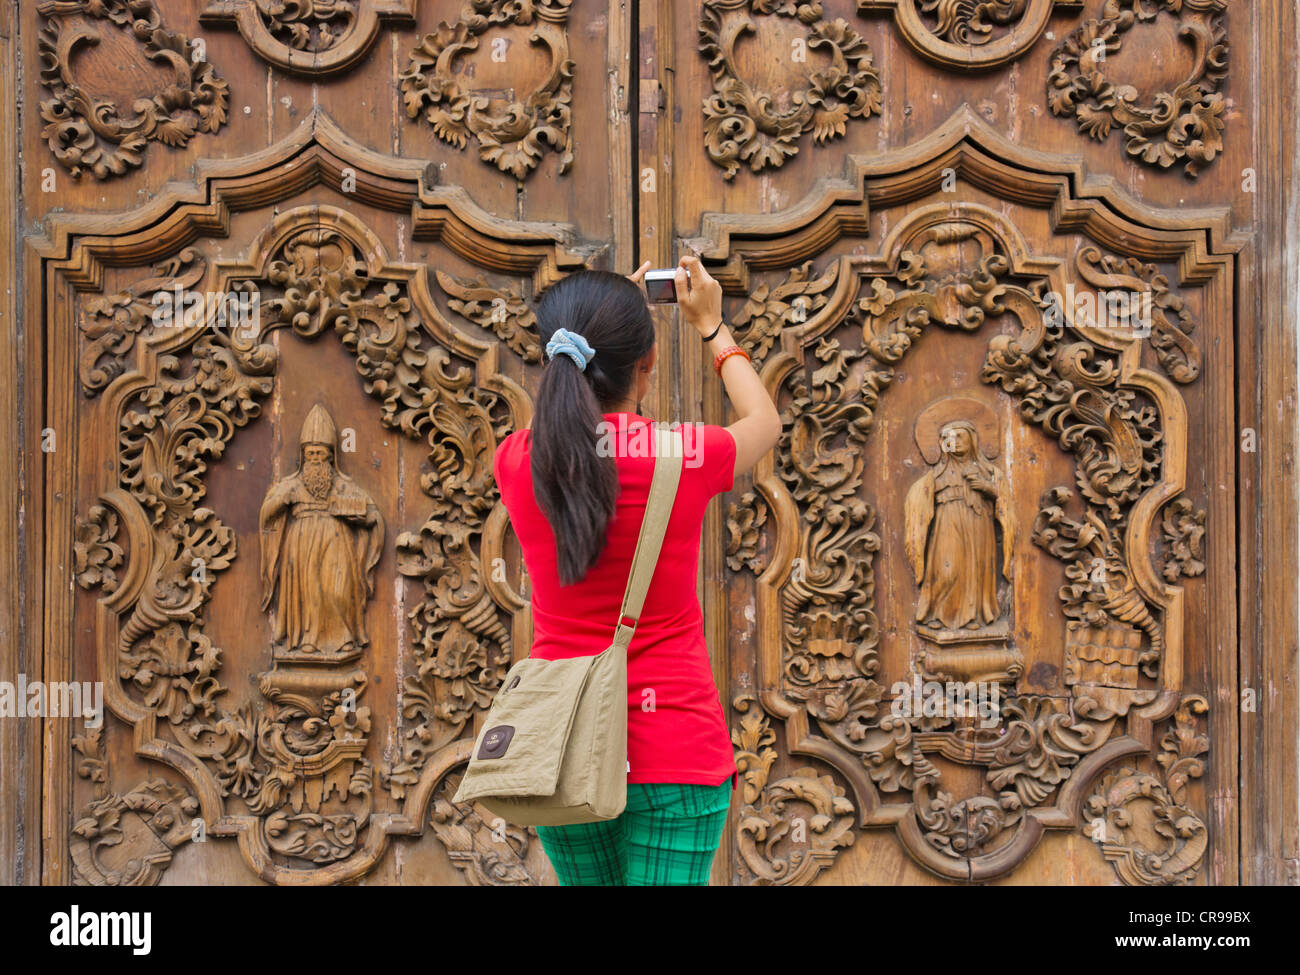 Touristen fotografieren die kunstvoll geschnitzte hölzernen Tür am Eingang zur Kathedrale von Manila, Manila, Philippinen Stockfoto